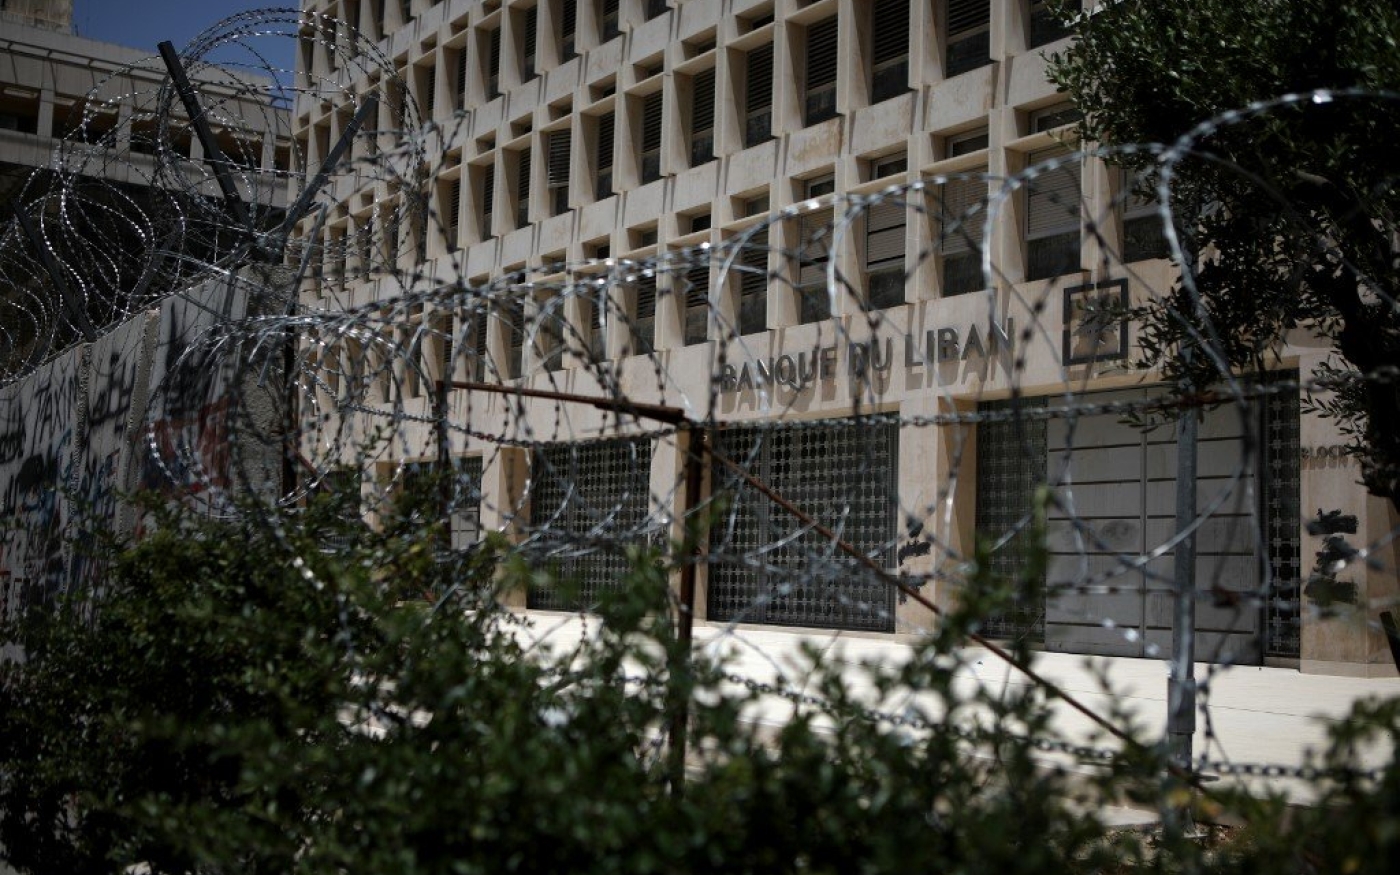 La banque centrale du Liban à Beyrouth, photographiée le 20 mai (AFP)